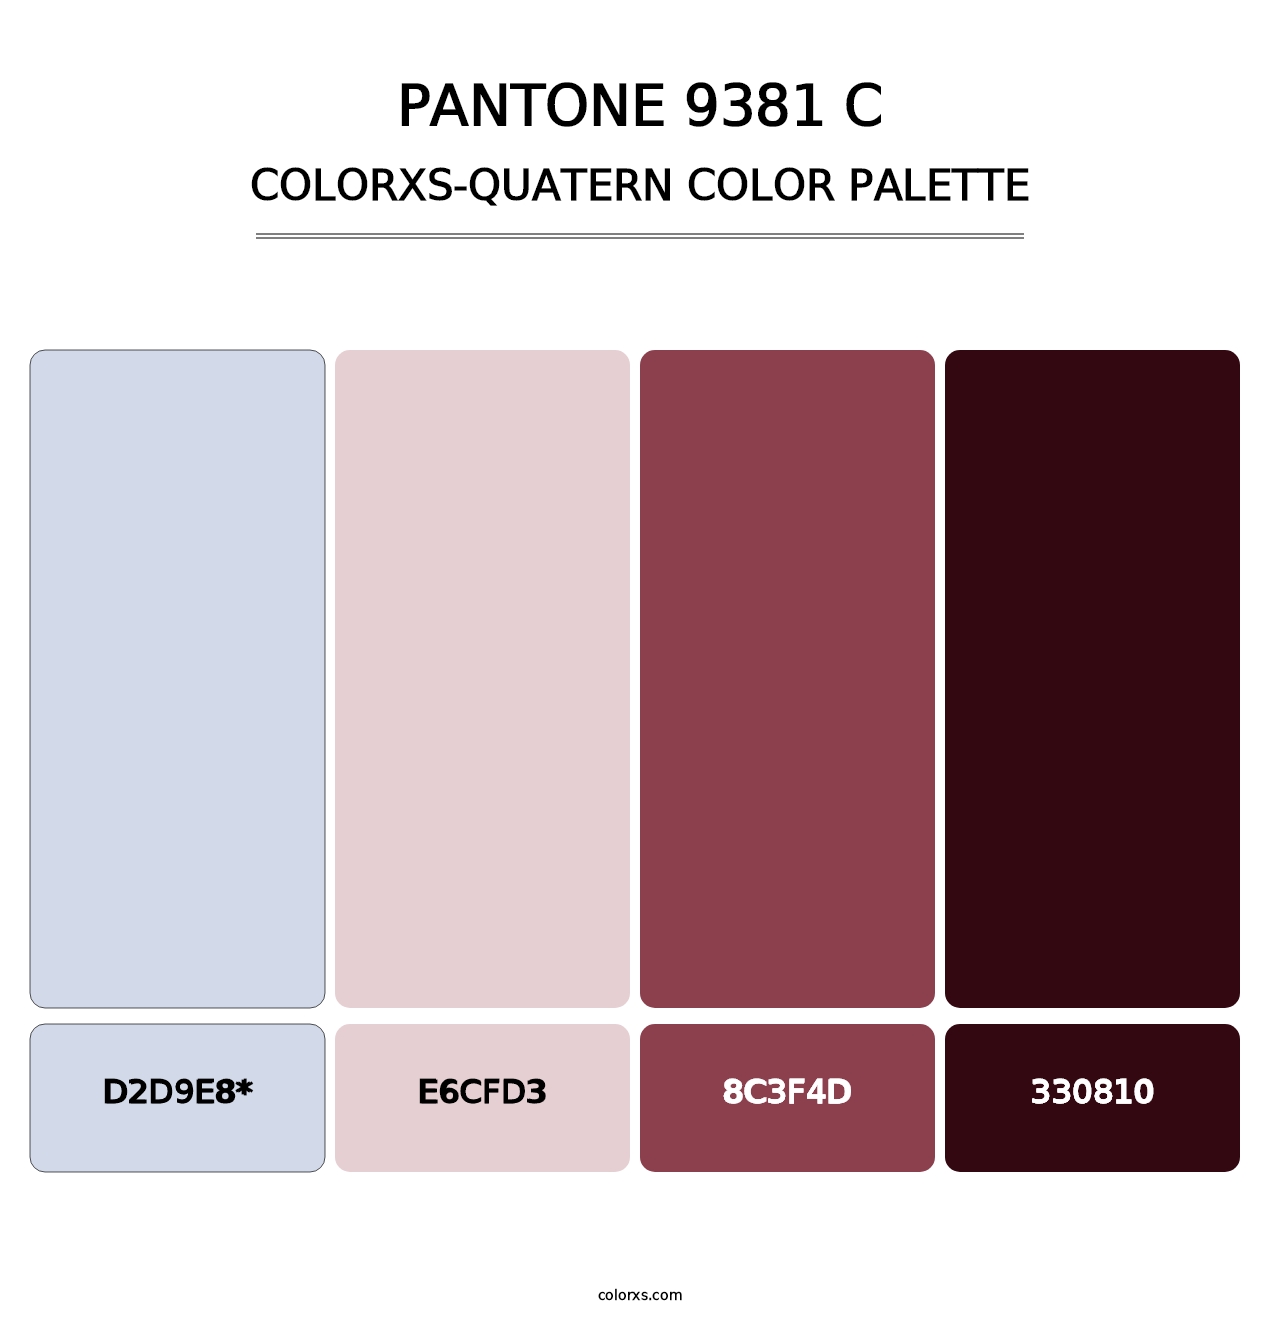 PANTONE 9381 C - Colorxs Quatern Palette